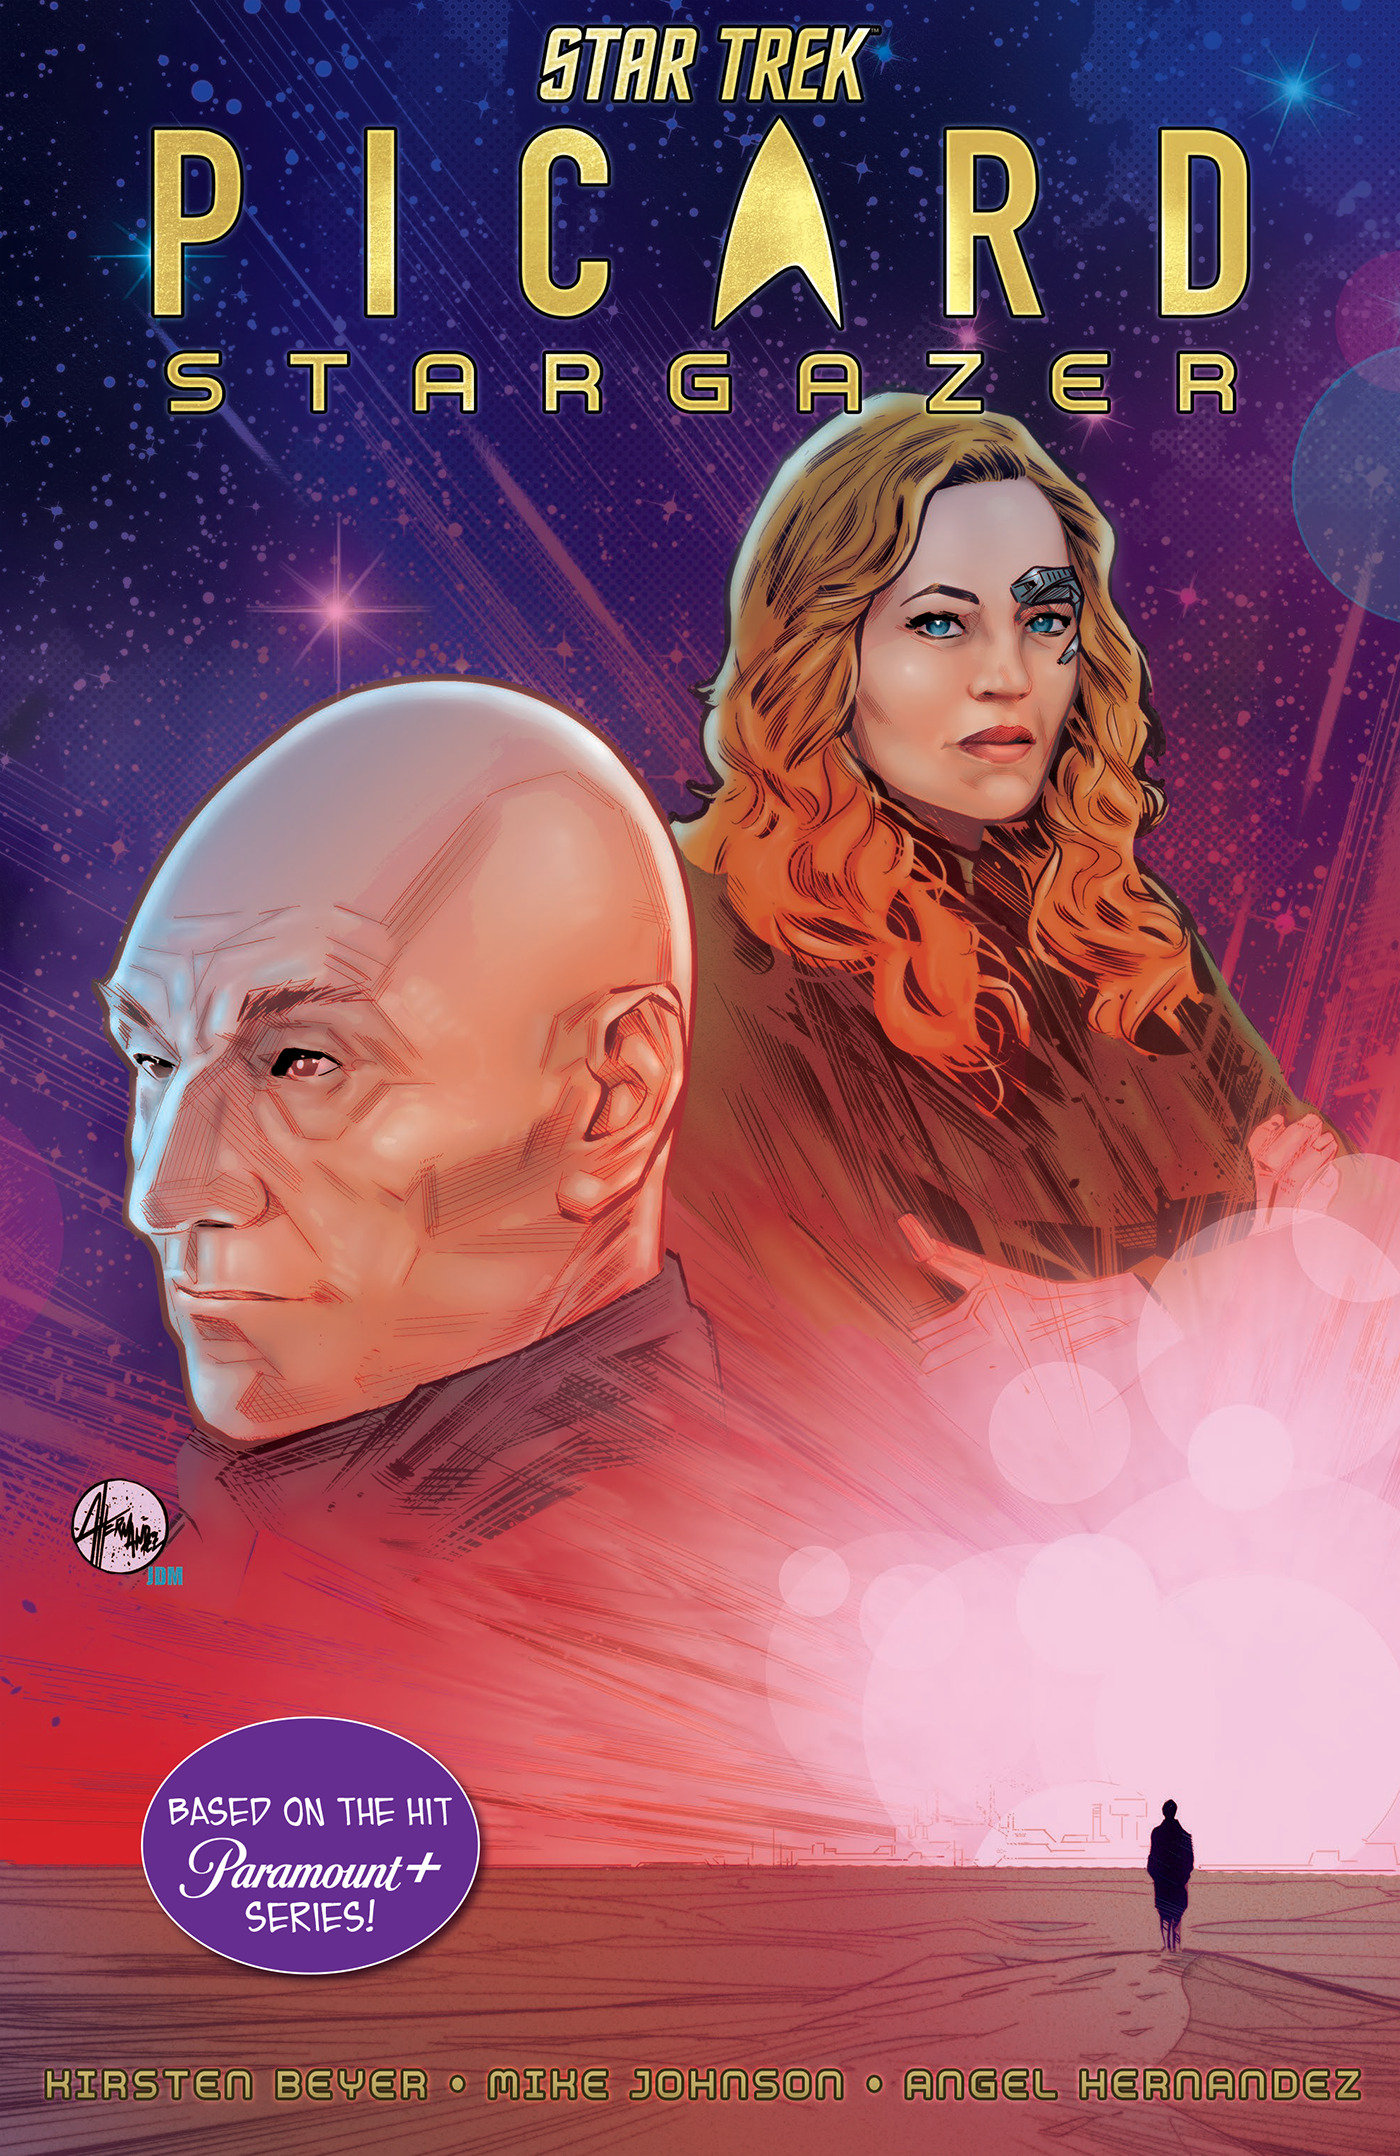 Star Trek Picard Graphic Novel Stargazer